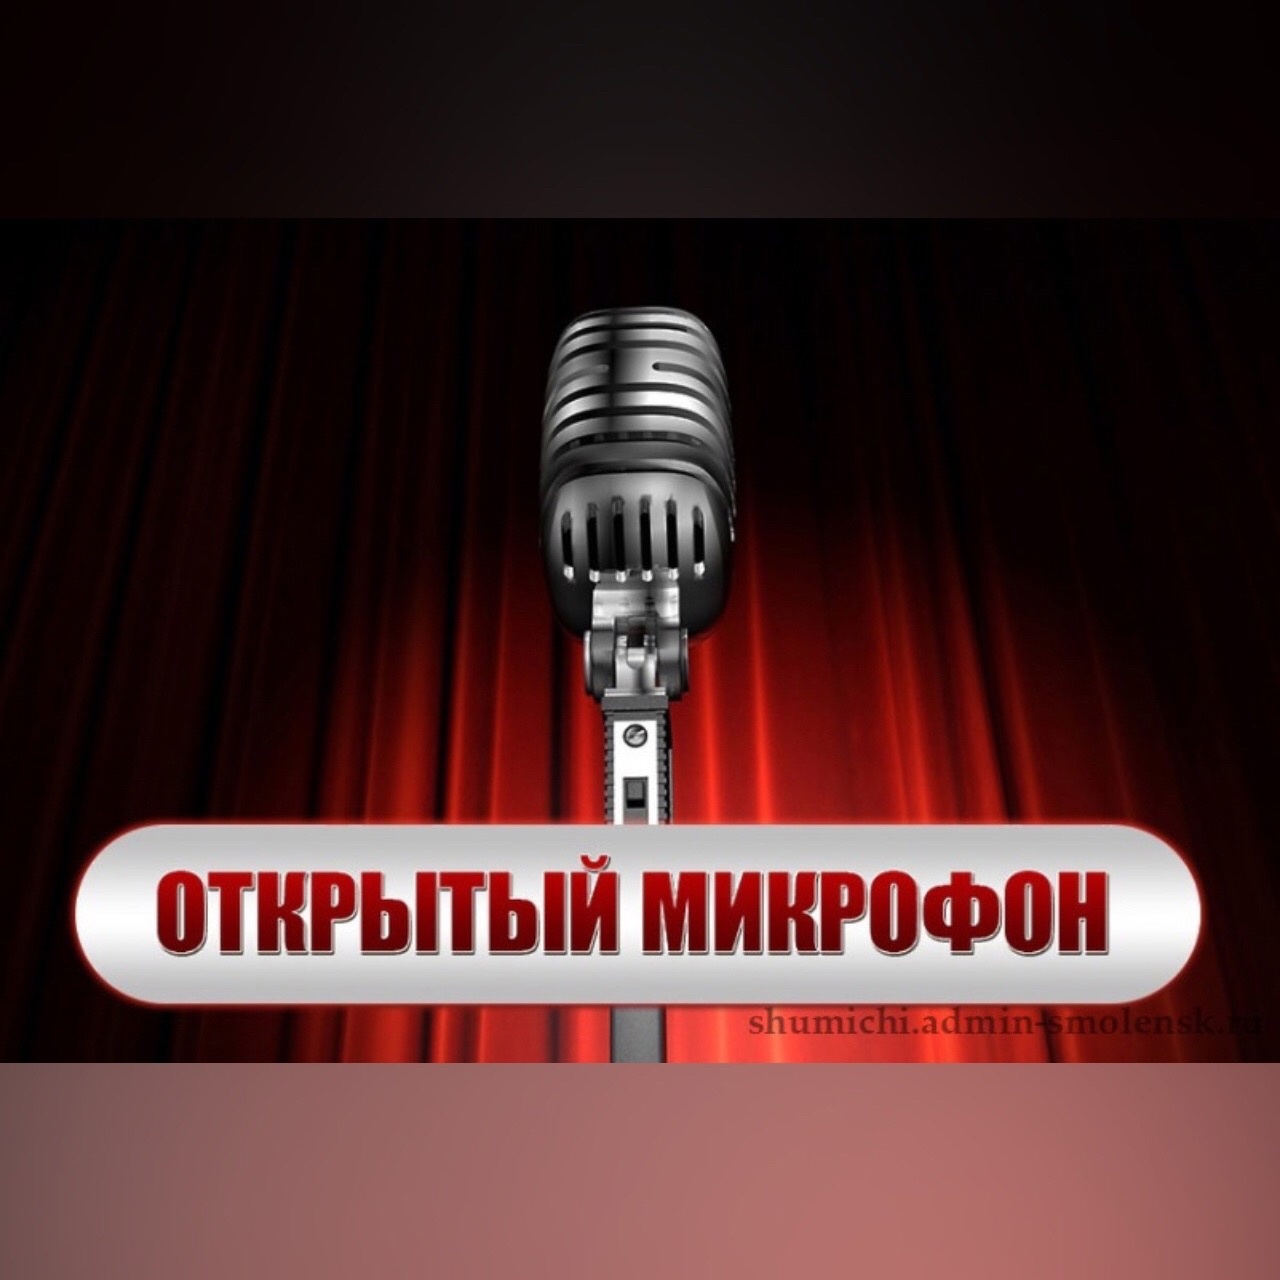 Глава Шумячского района проведёт встречу с жителями в формате «открытый микрофон»